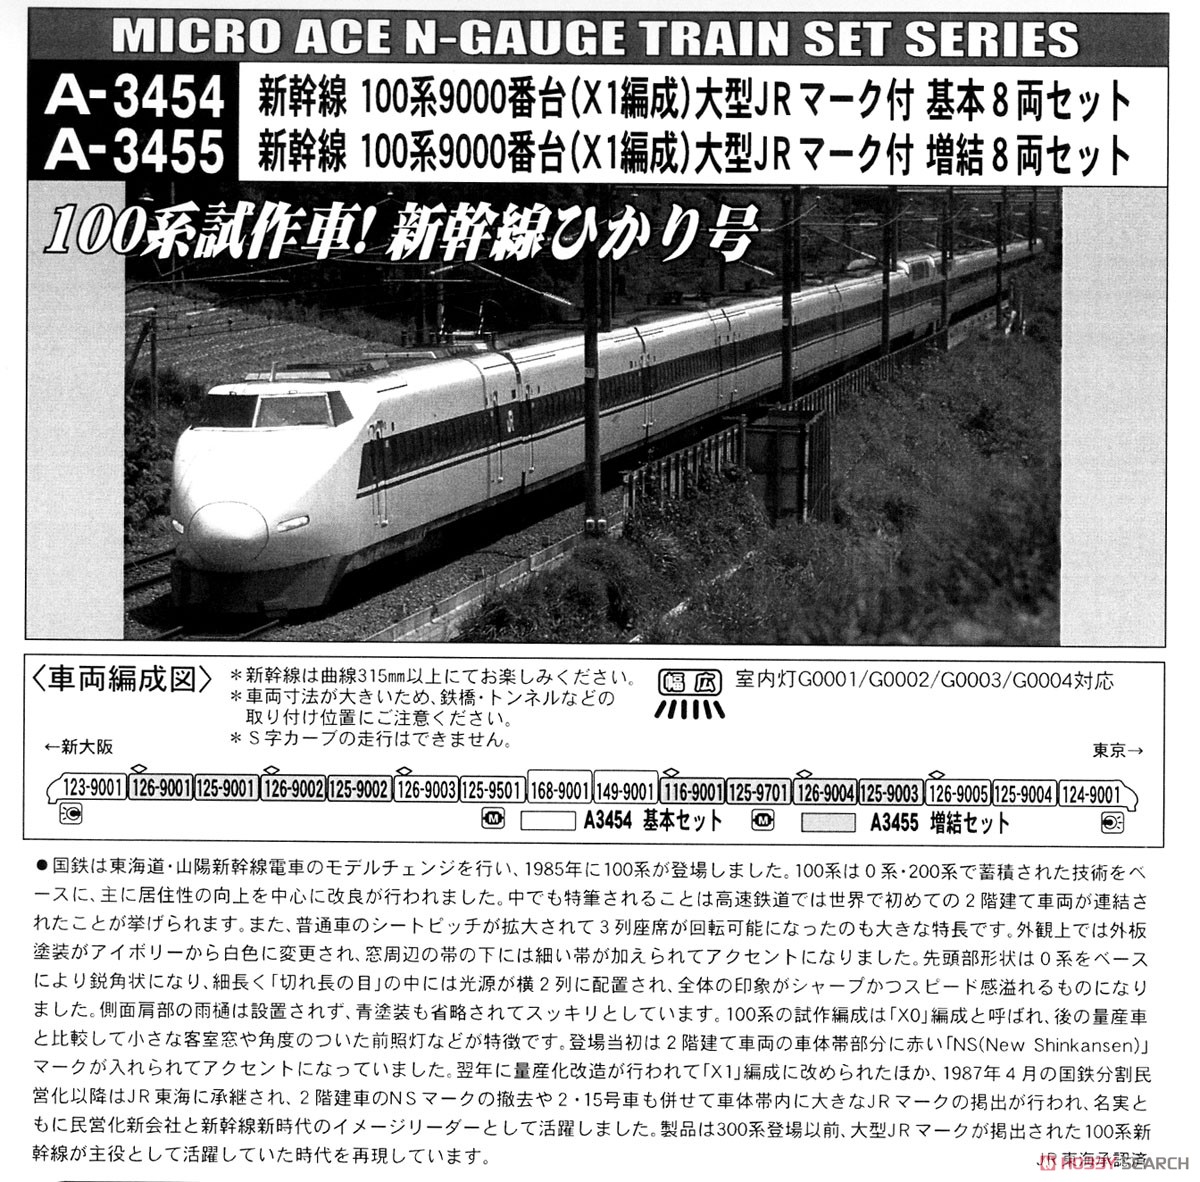 新幹線 100系9000番台 (X1編成) 大型JRマーク付 (基本・8両セット) (鉄道模型) 解説2